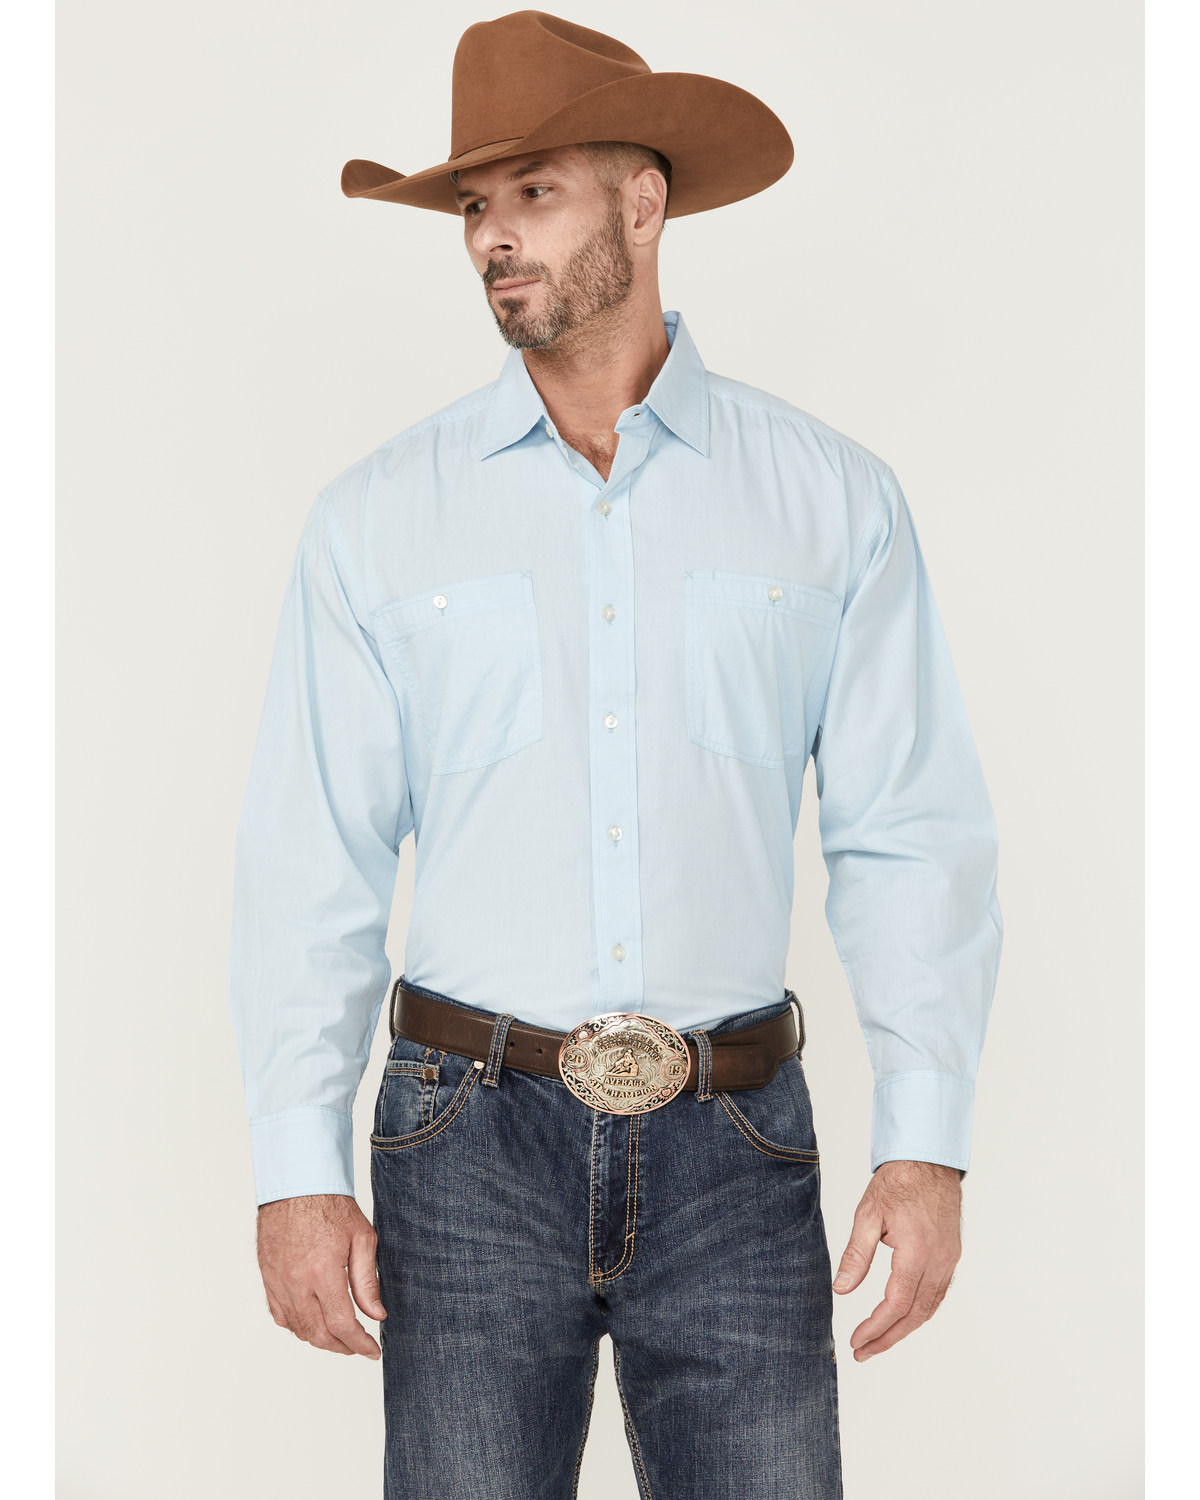 Resistol Men's Long Sleeve Button Down Western Shirt